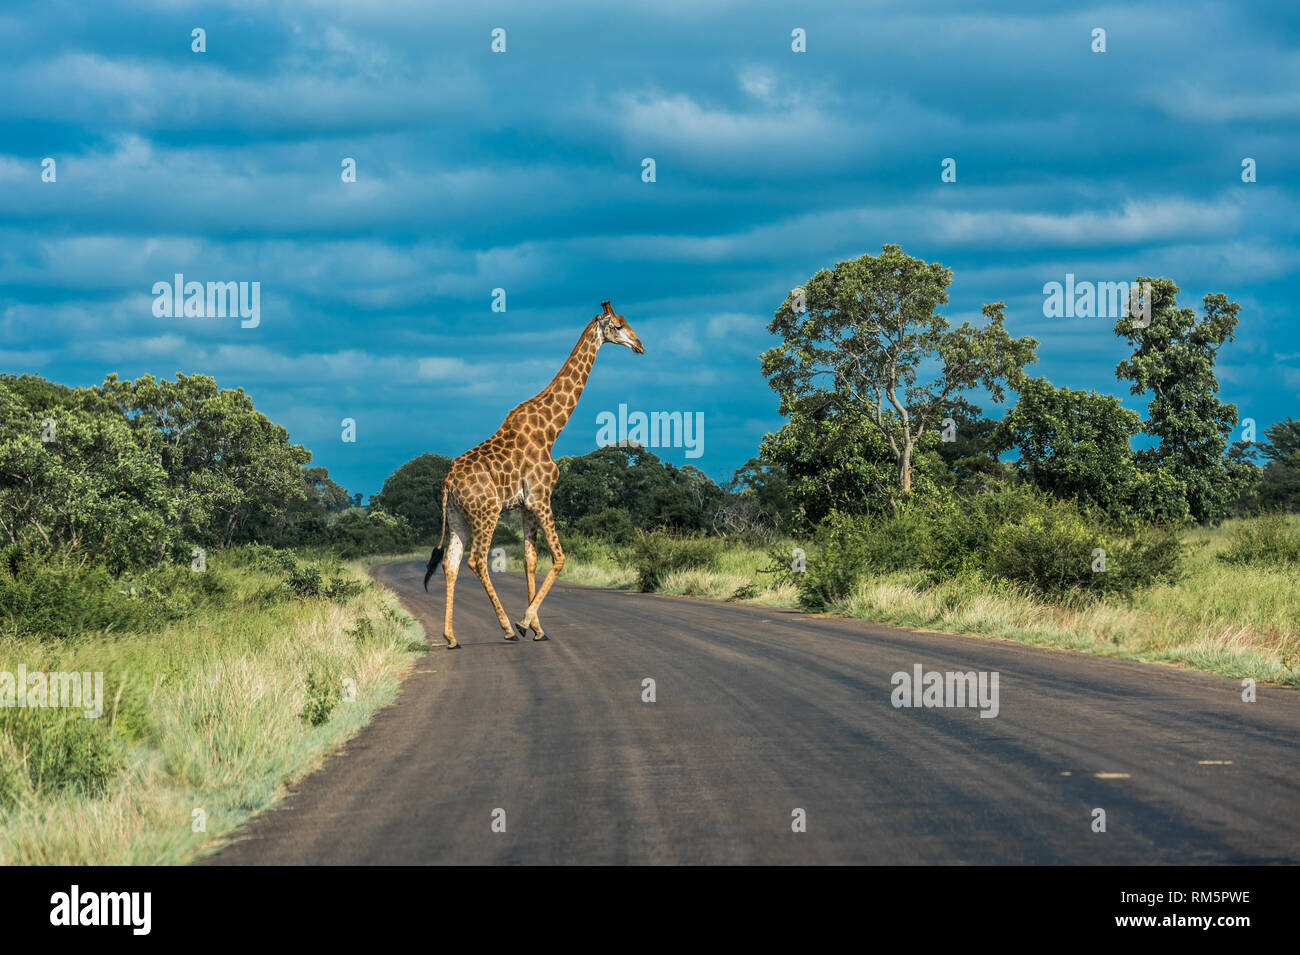 Girafe traversant la rue, Kruger National Park, Afrique du Sud. Banque D'Images